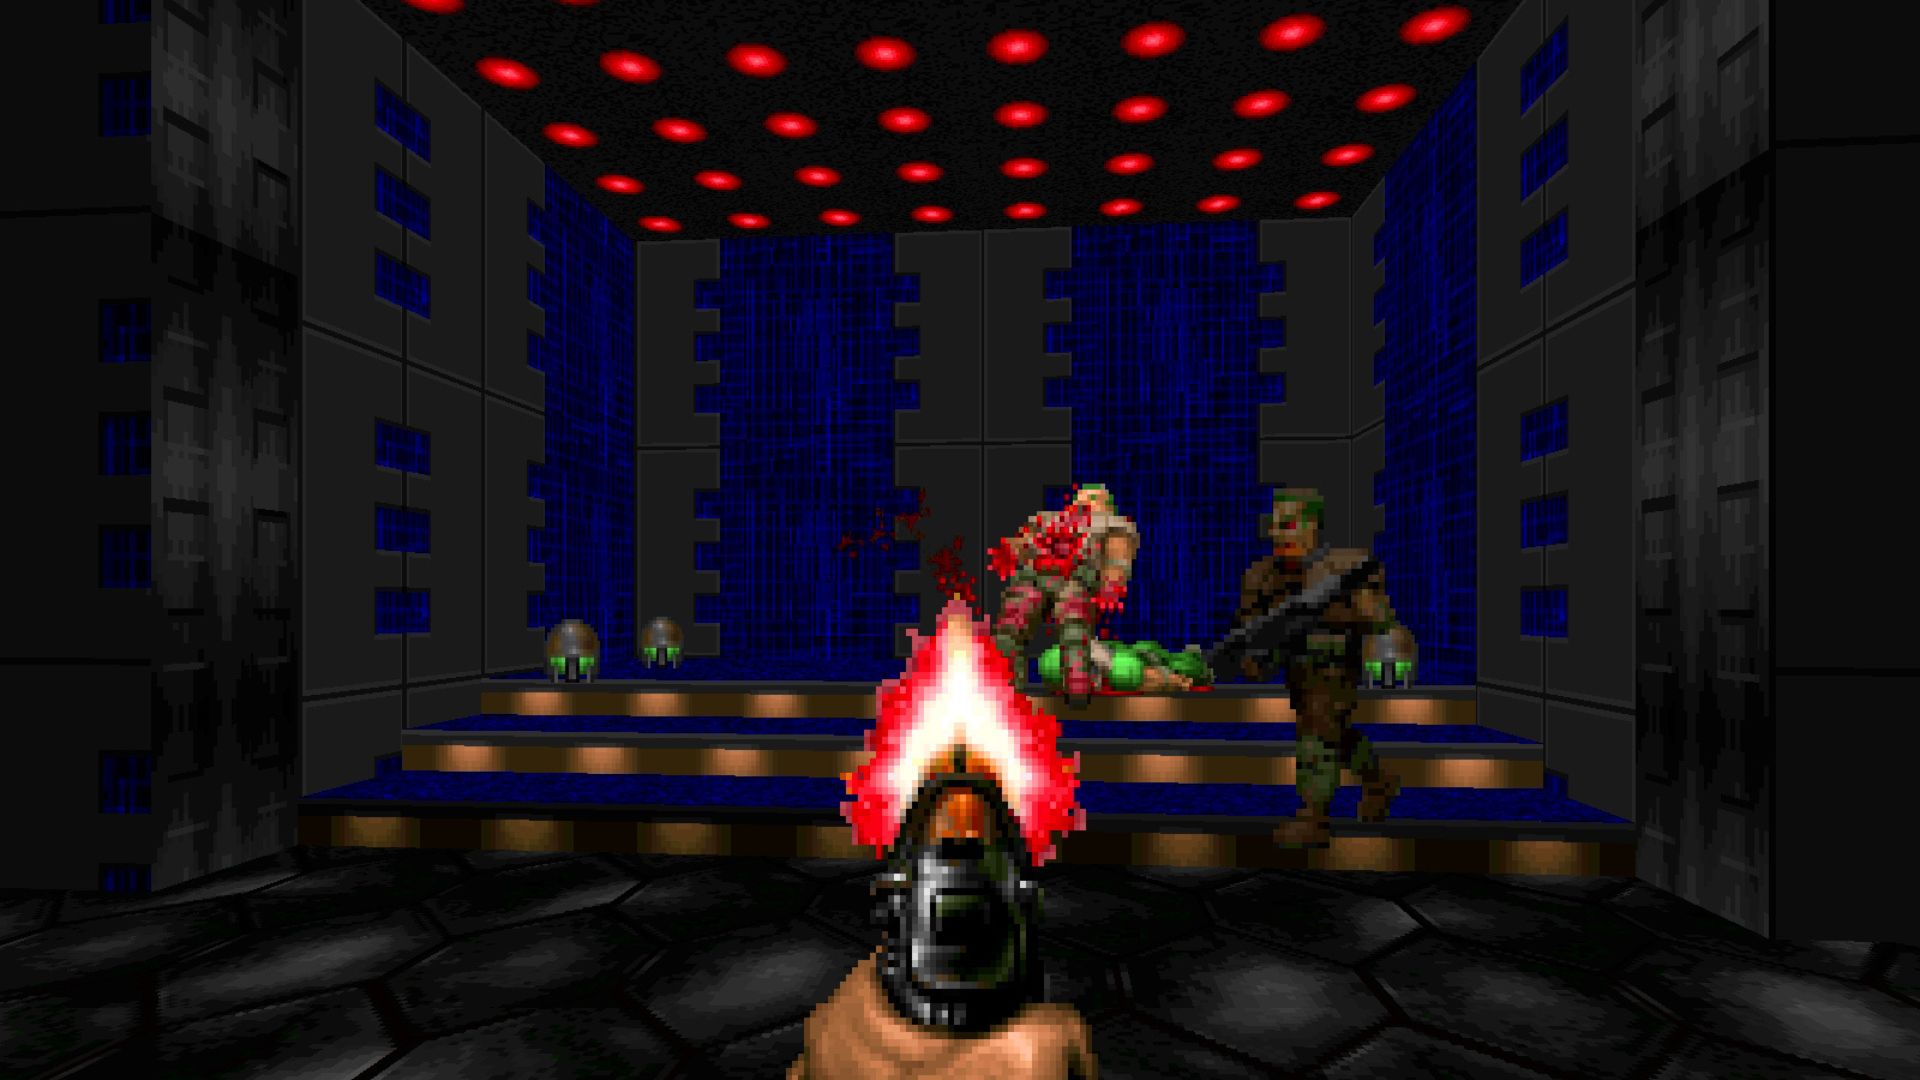 FPS ゲーム - 屋根に赤いライトがあり、ピクセル化された悪魔が彼の前で死んでいる部屋で銃を構えている男性の一人称ショット。